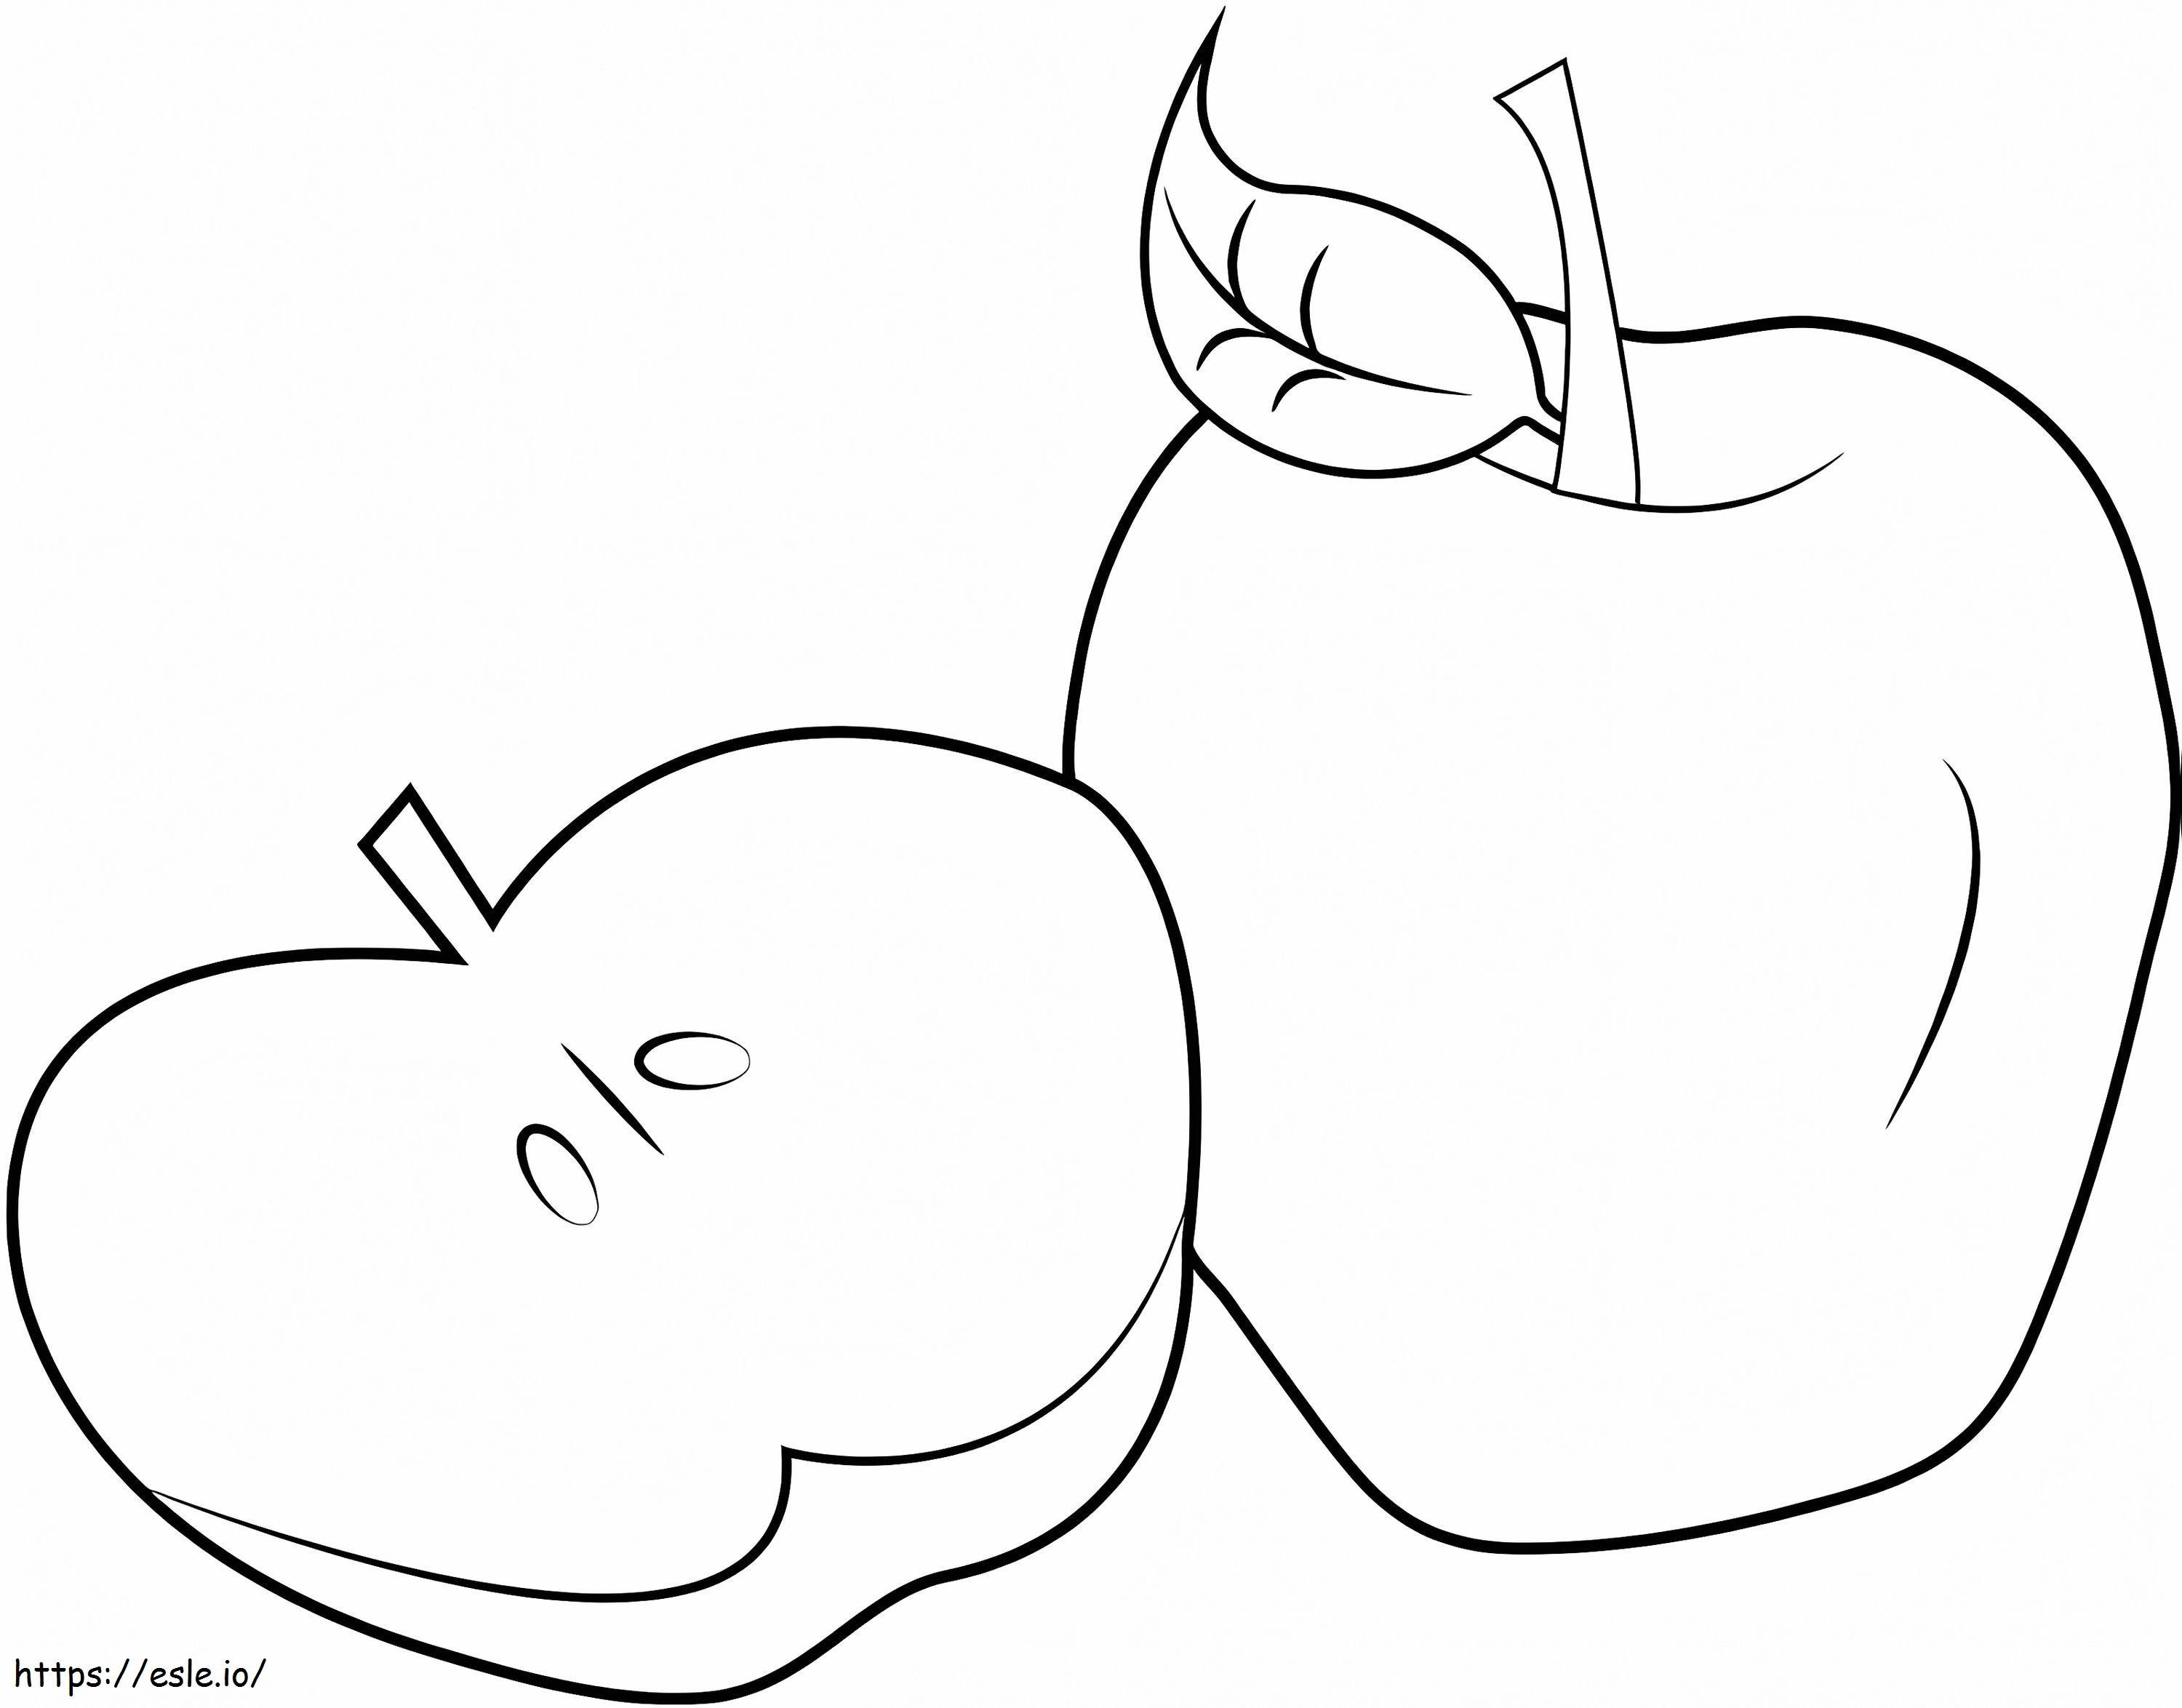 dilimlenmiş elma ve bir elma boyama